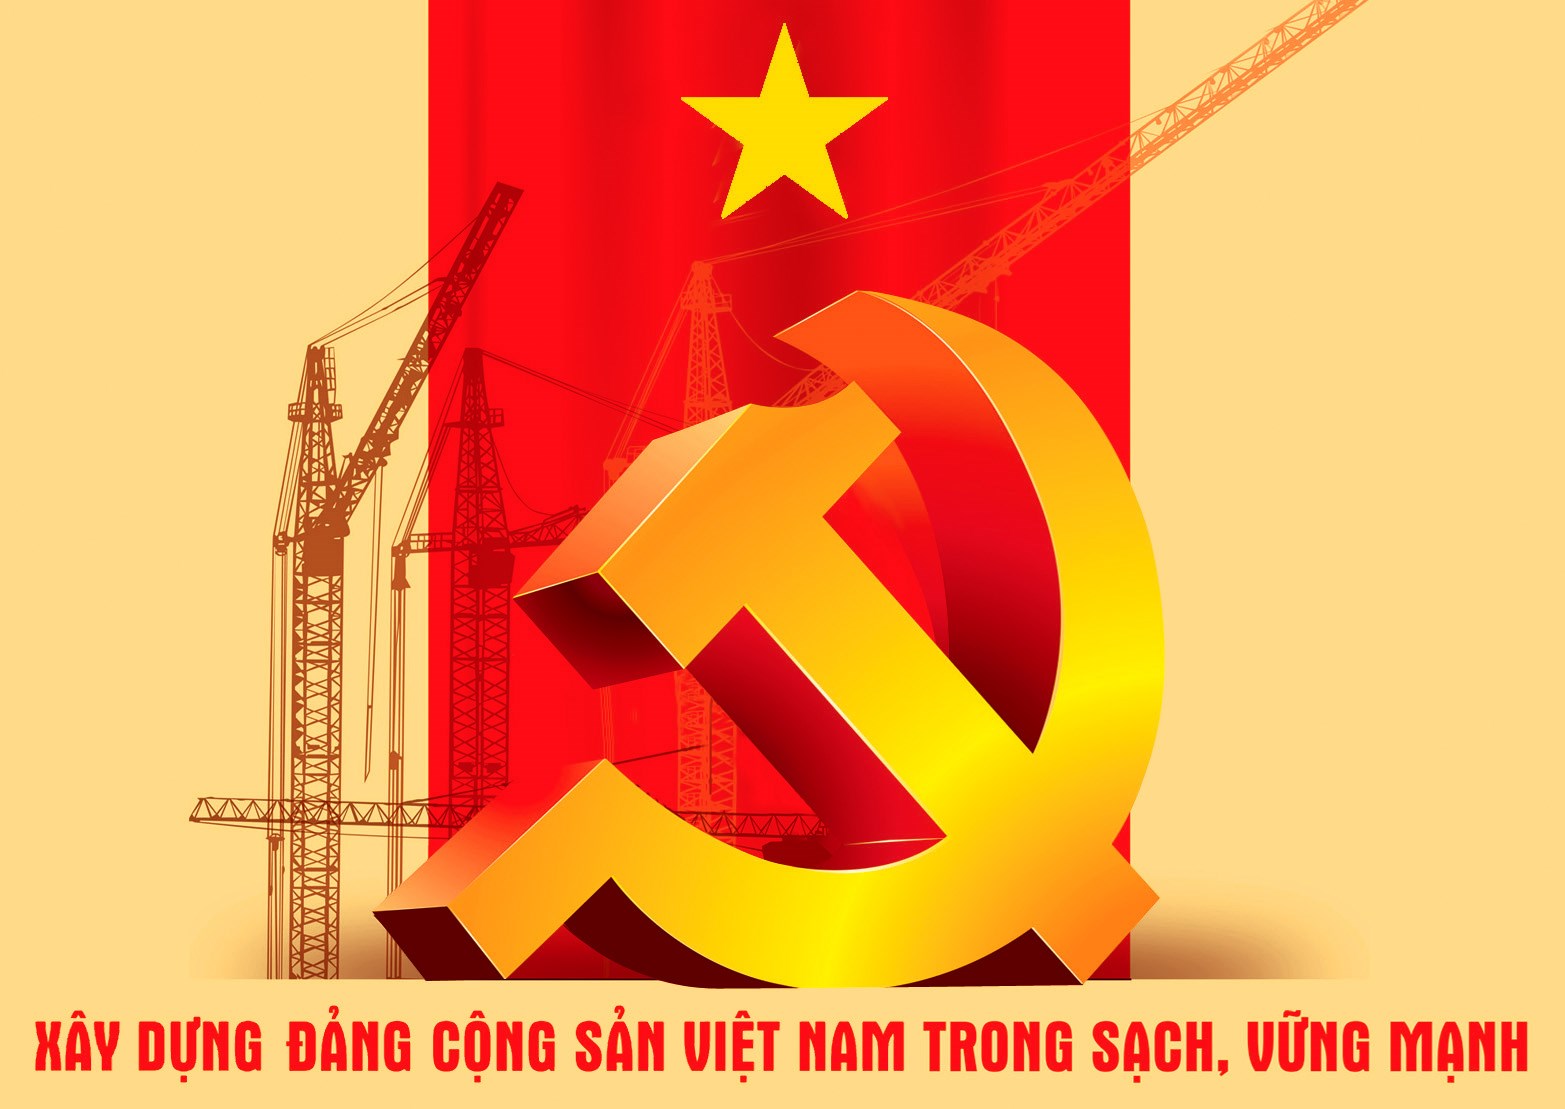 Vai trò của giảng viên các trường chính trị trong công tác đấu tranh với cơ hội chính trị ở Việt Nam hiện nay